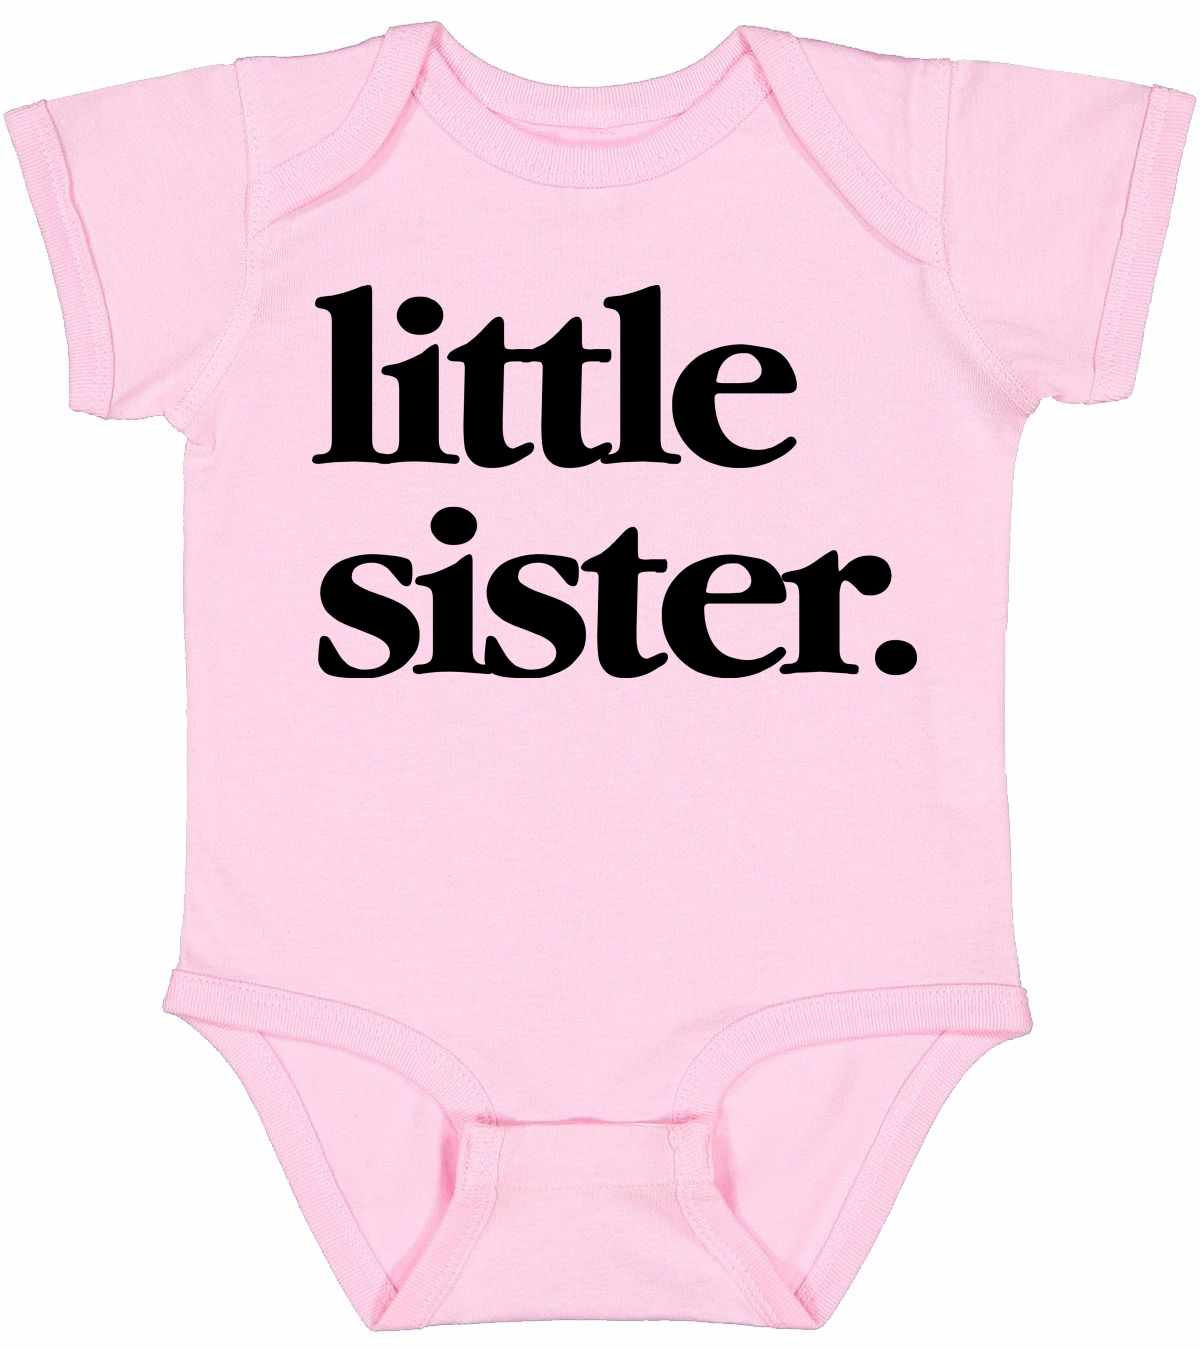 Little Sister on Infant BodySuit